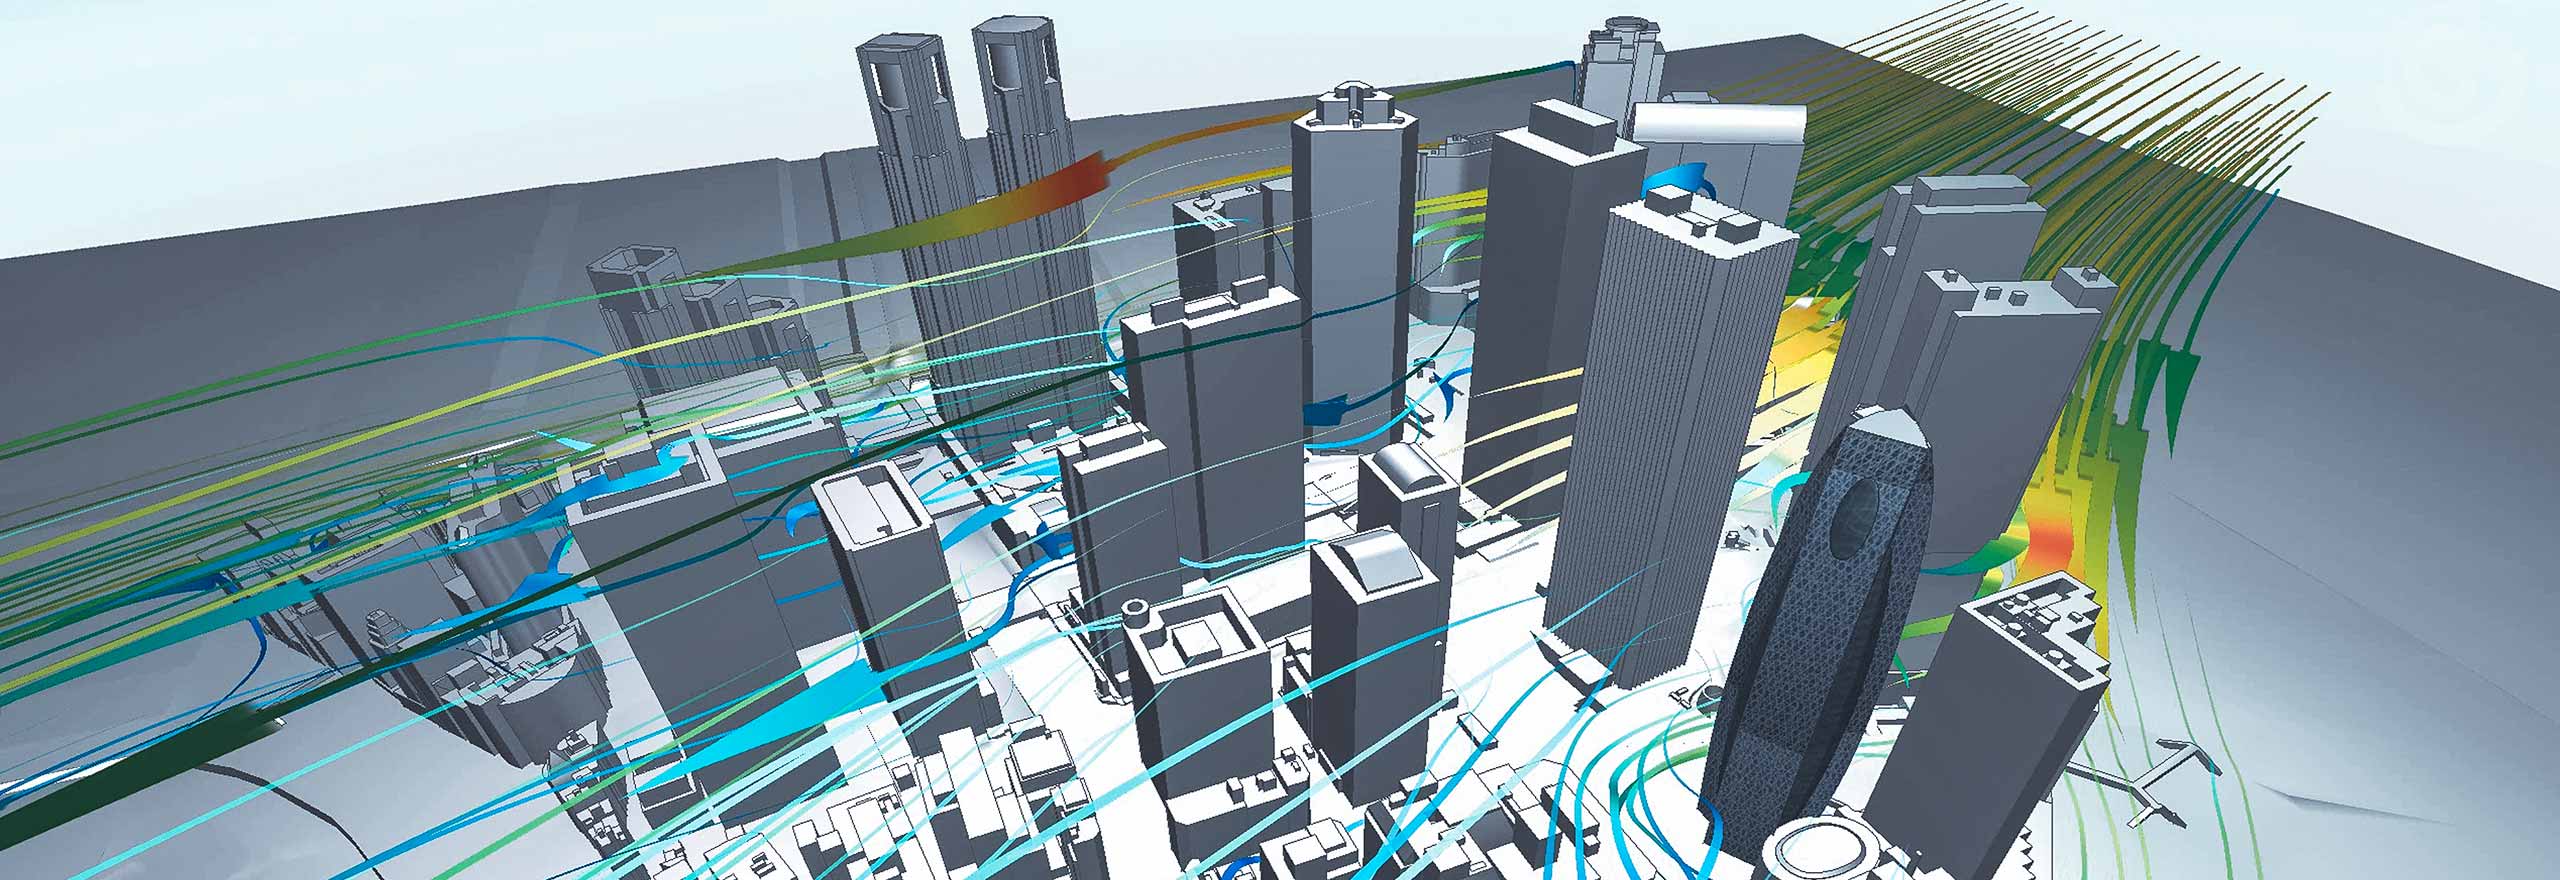 Visualizzazione del flusso d'aria intorno agli edifici utilizzando il software di simulazione multifisica CFD